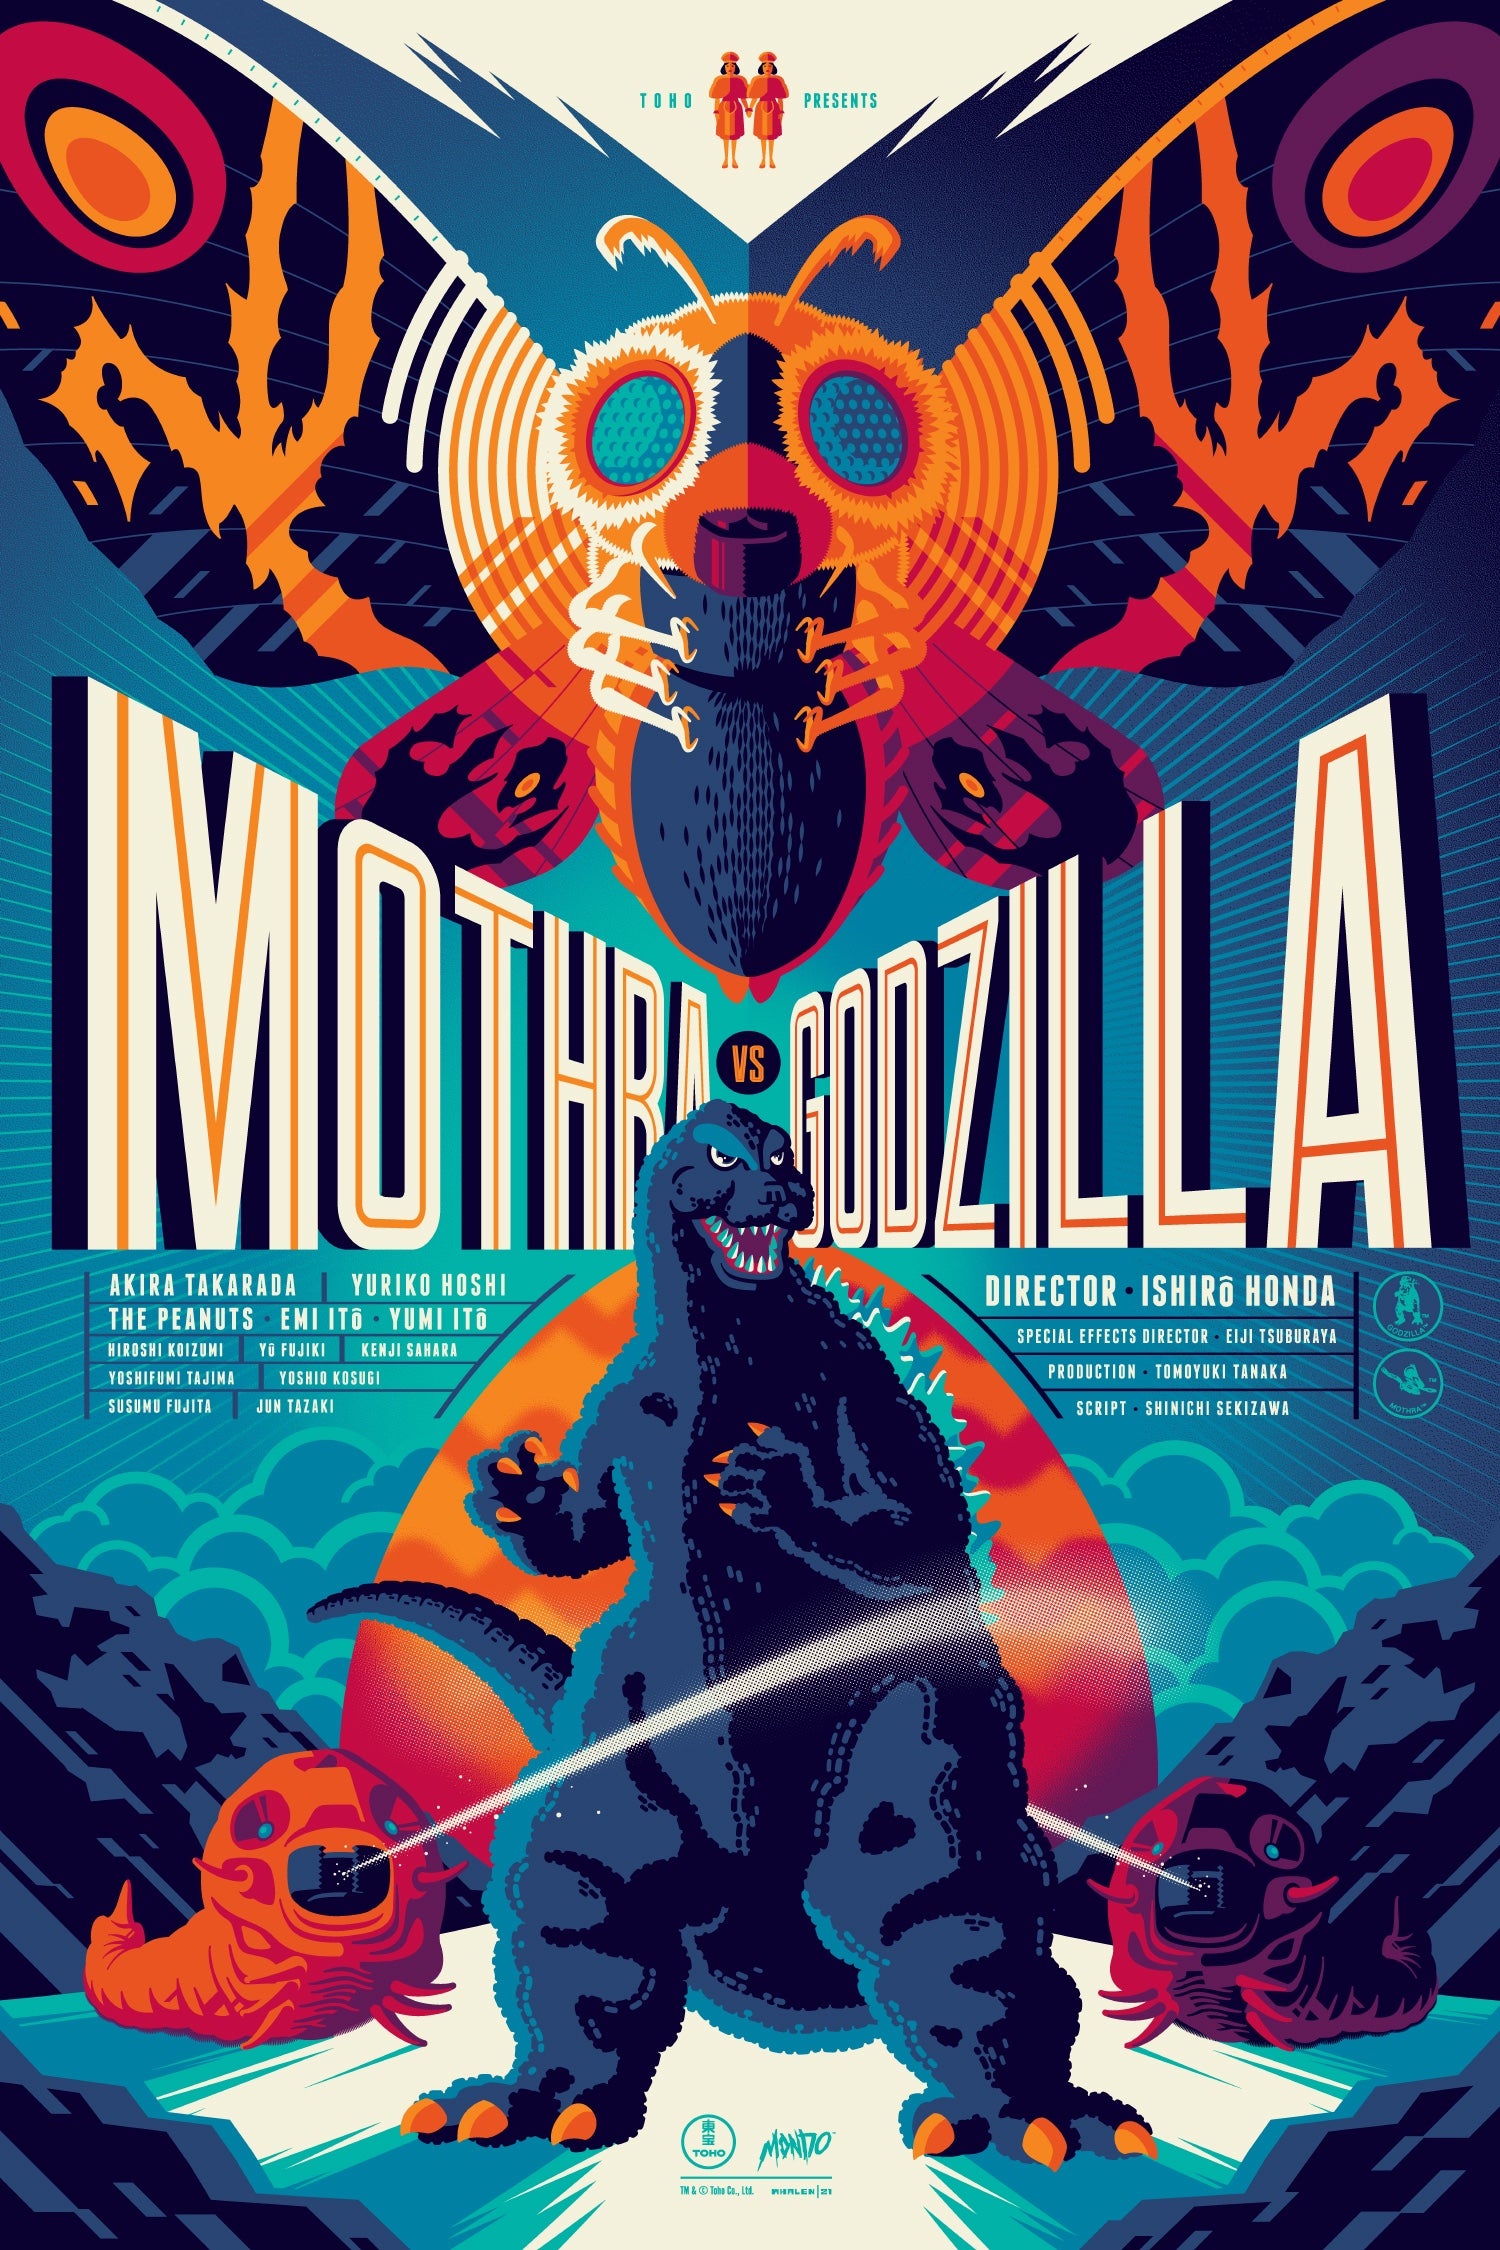 Mothra vs. Godzilla by Tom Whalen (Regular) (Image: Tom Whalen/Mondo/Toho)